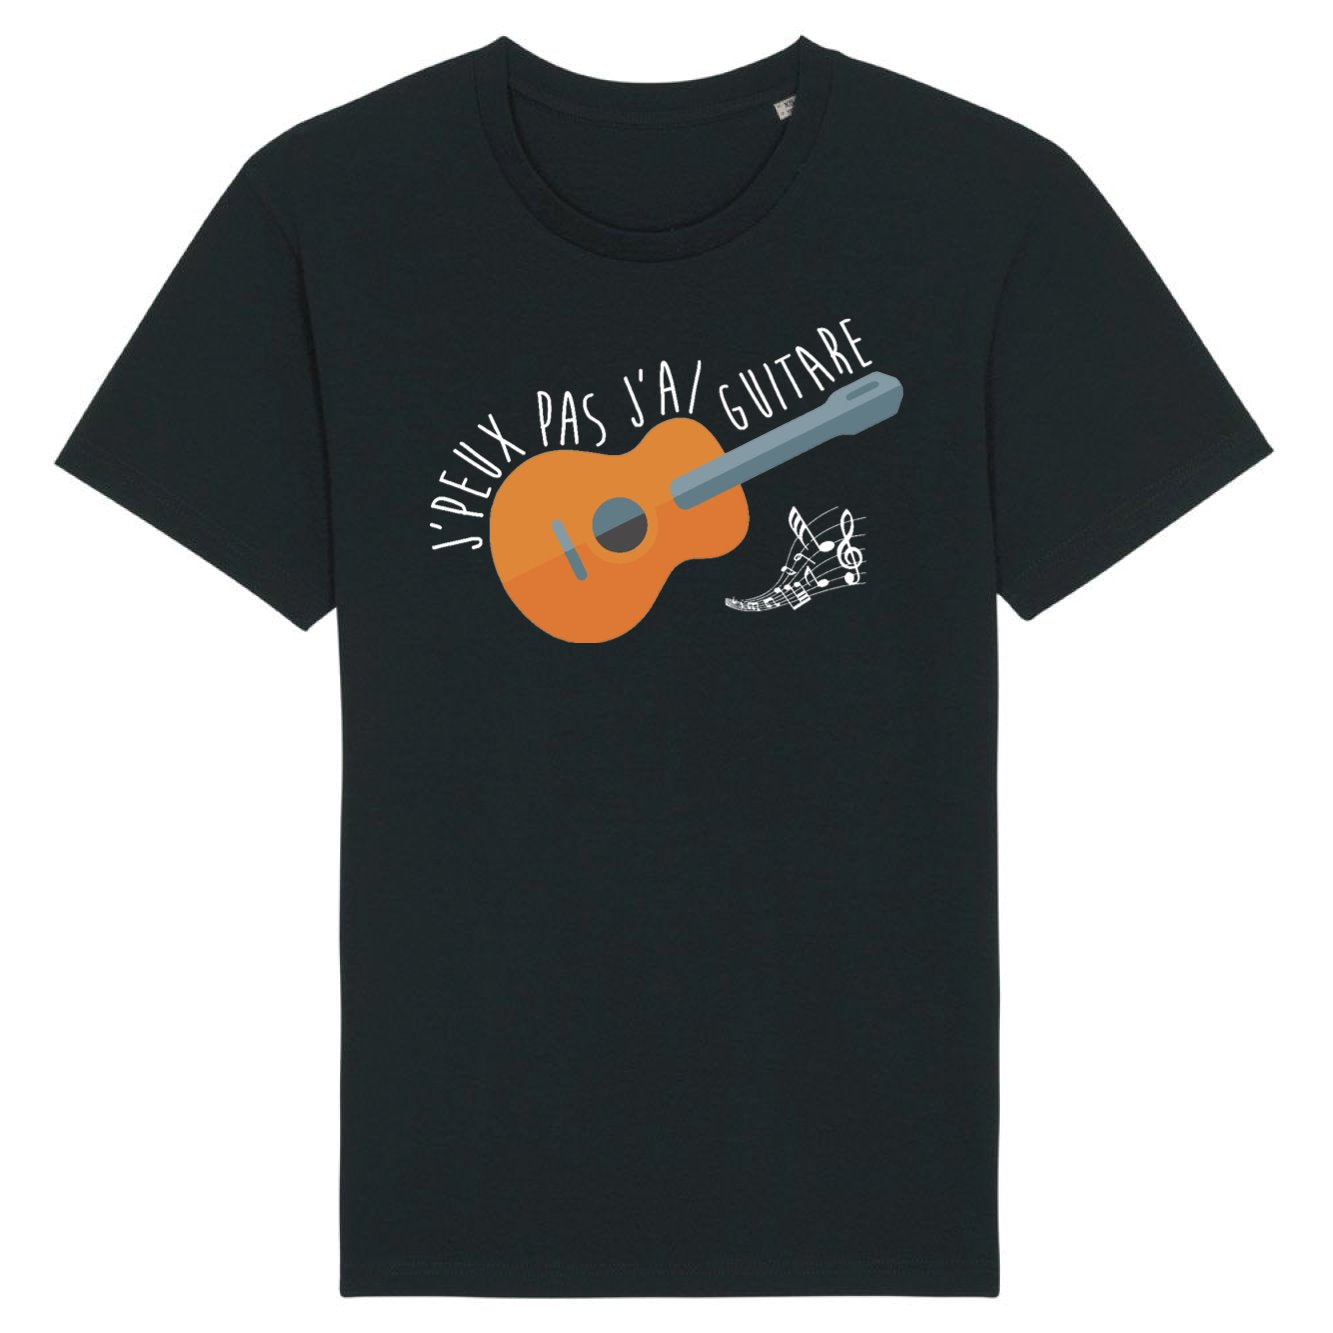 T-Shirt Homme J'peux pas j'ai guitare 